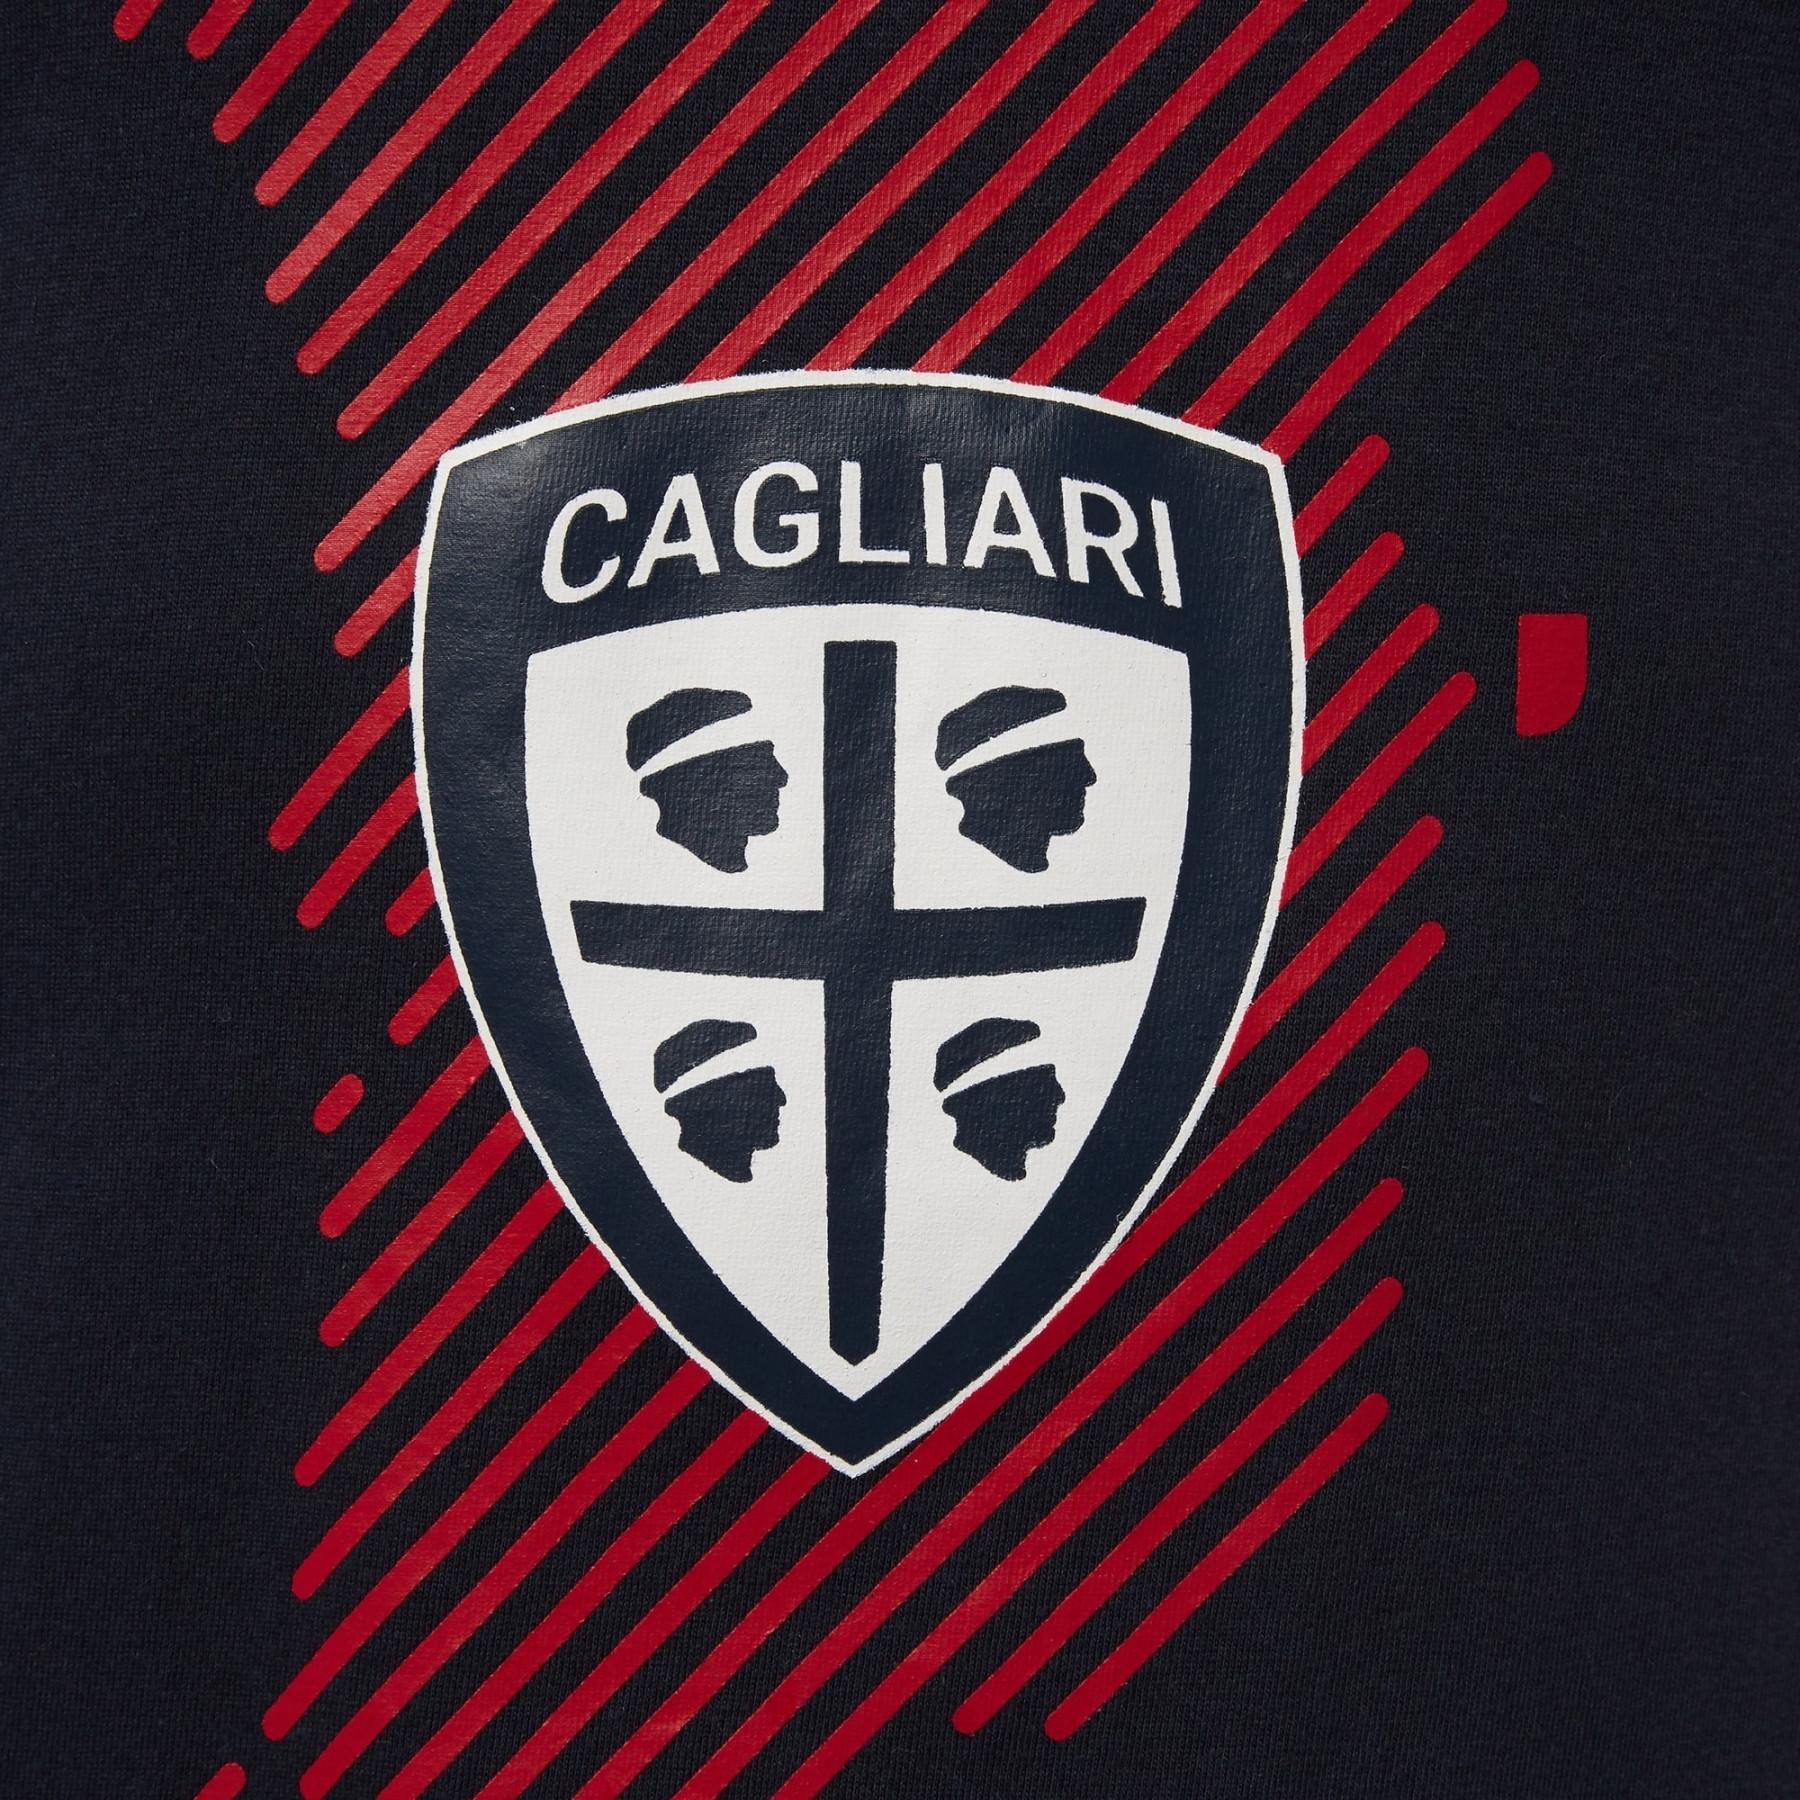 T-shirt Cagliari Calcio bh 2 stampa